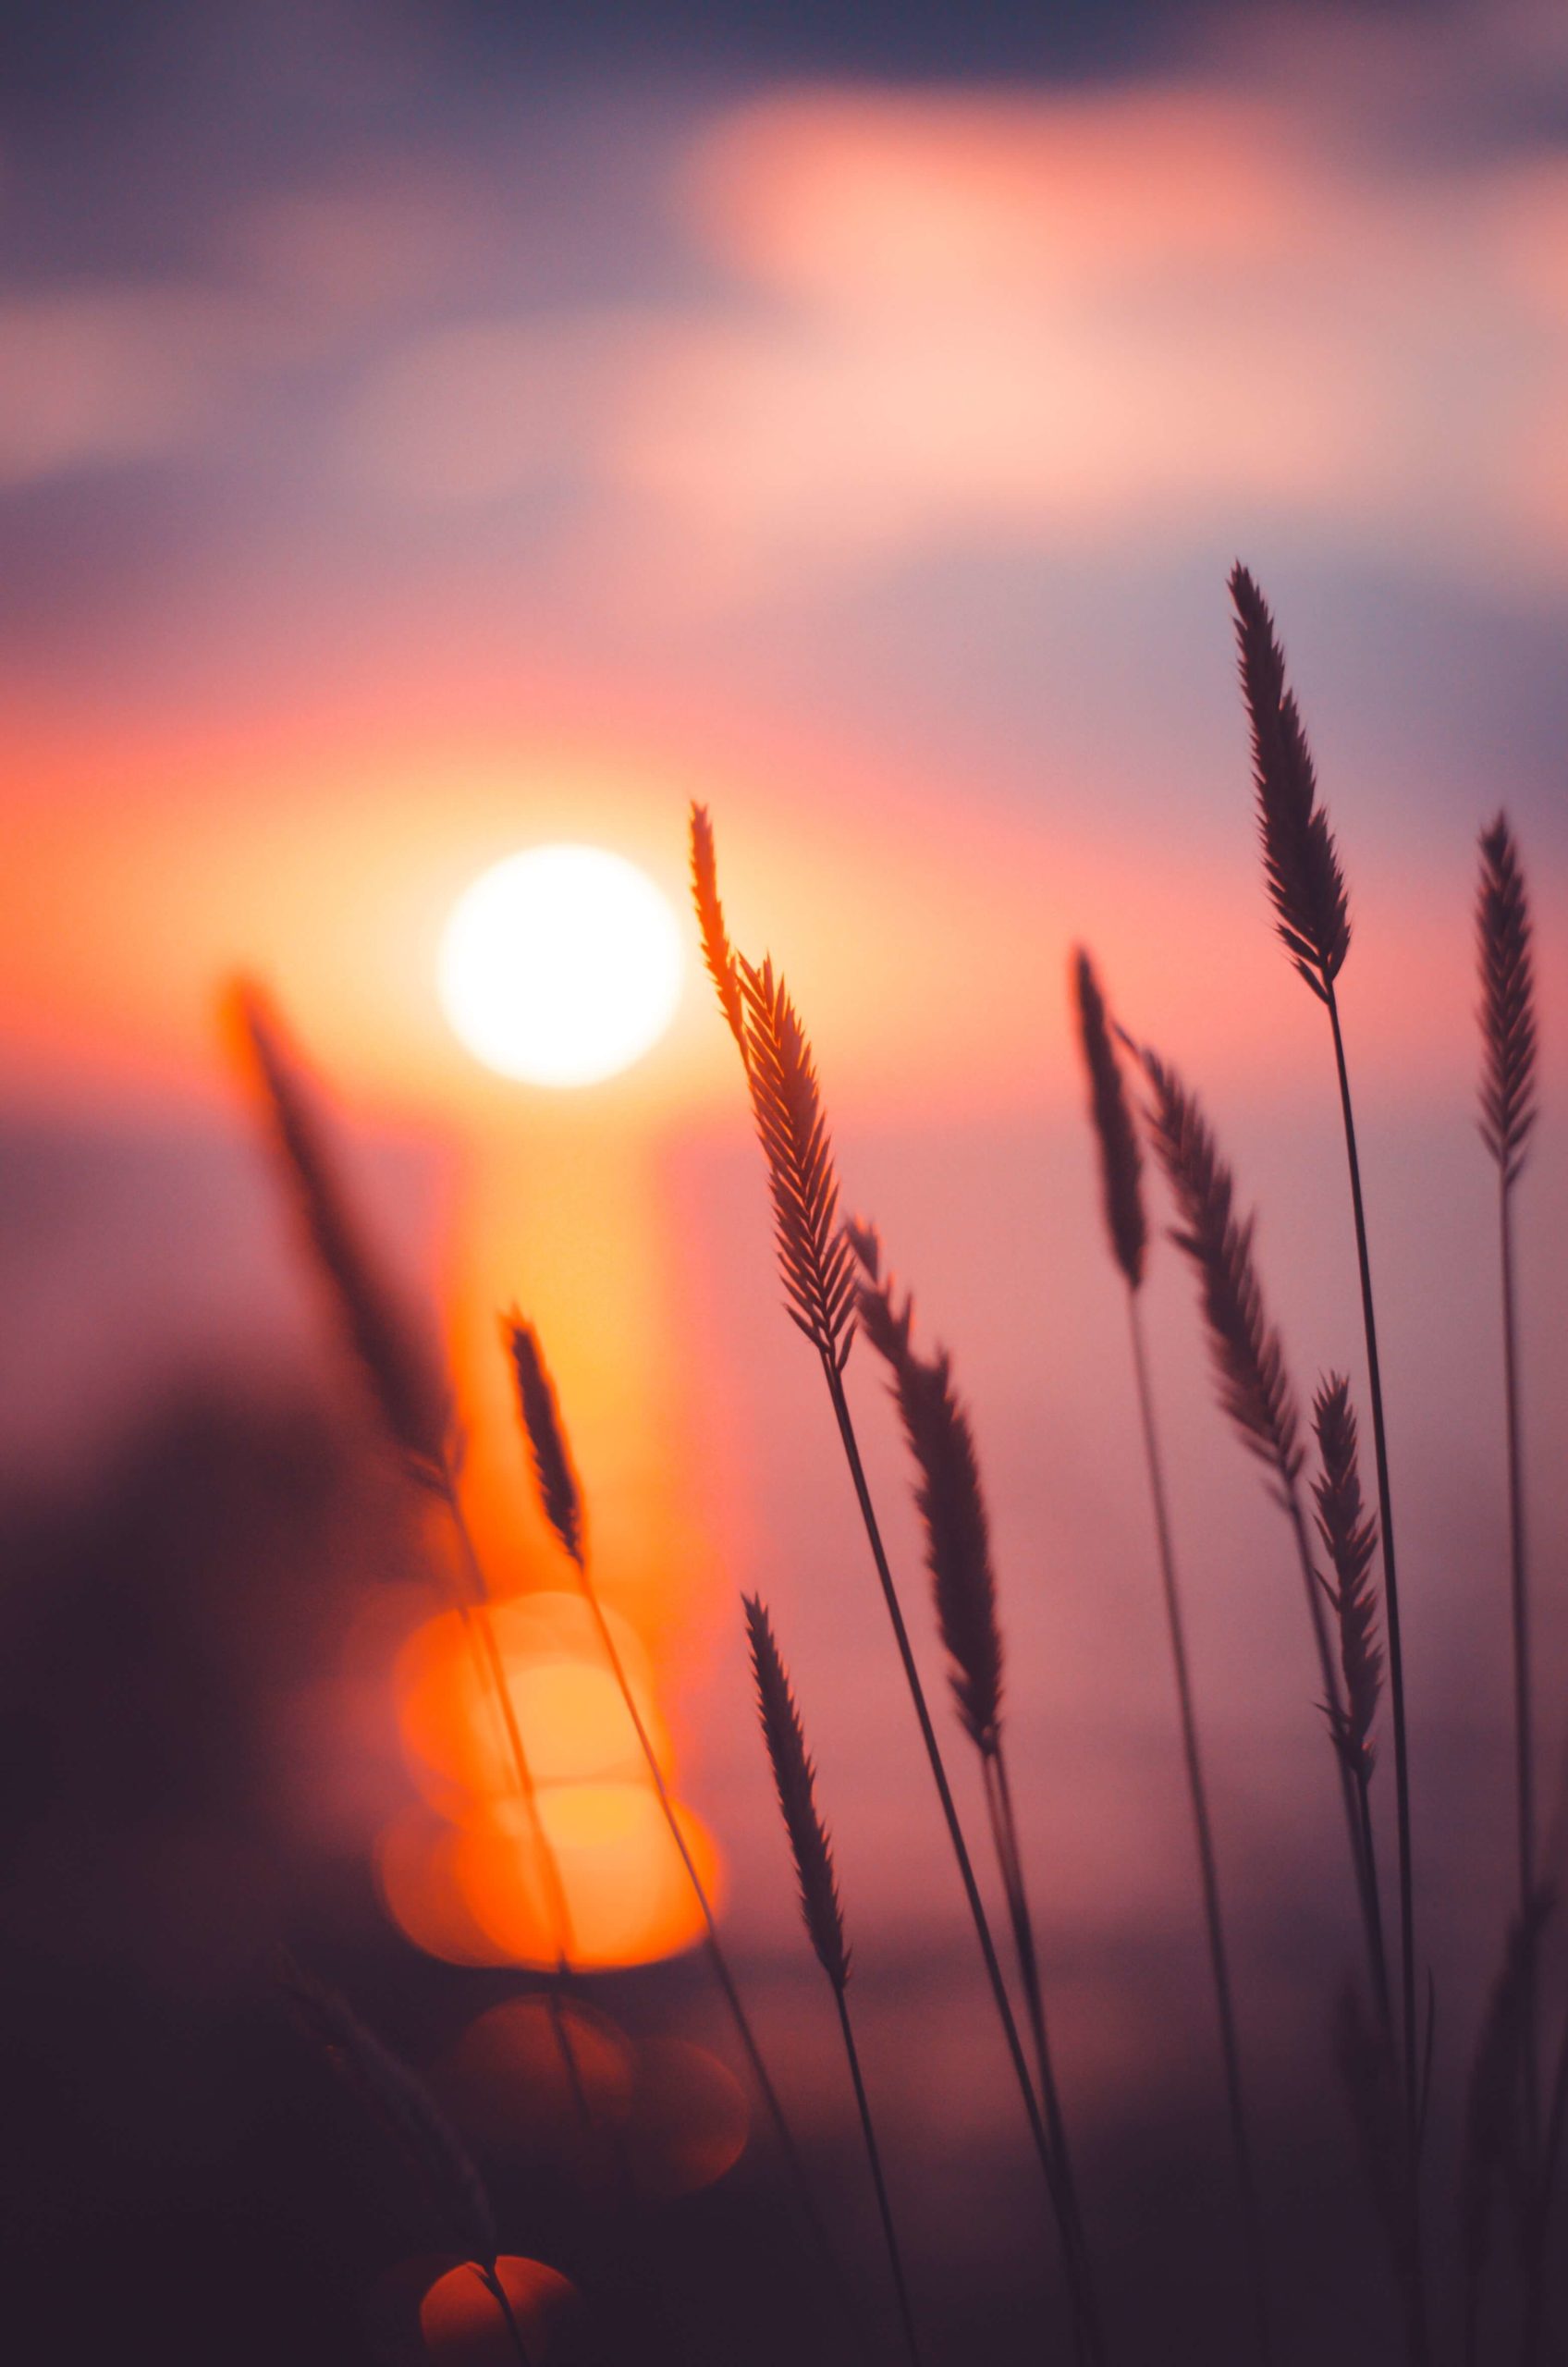 épis de blé à contre jour, sur un fond de coucher de soleil aux couleurs rose orange